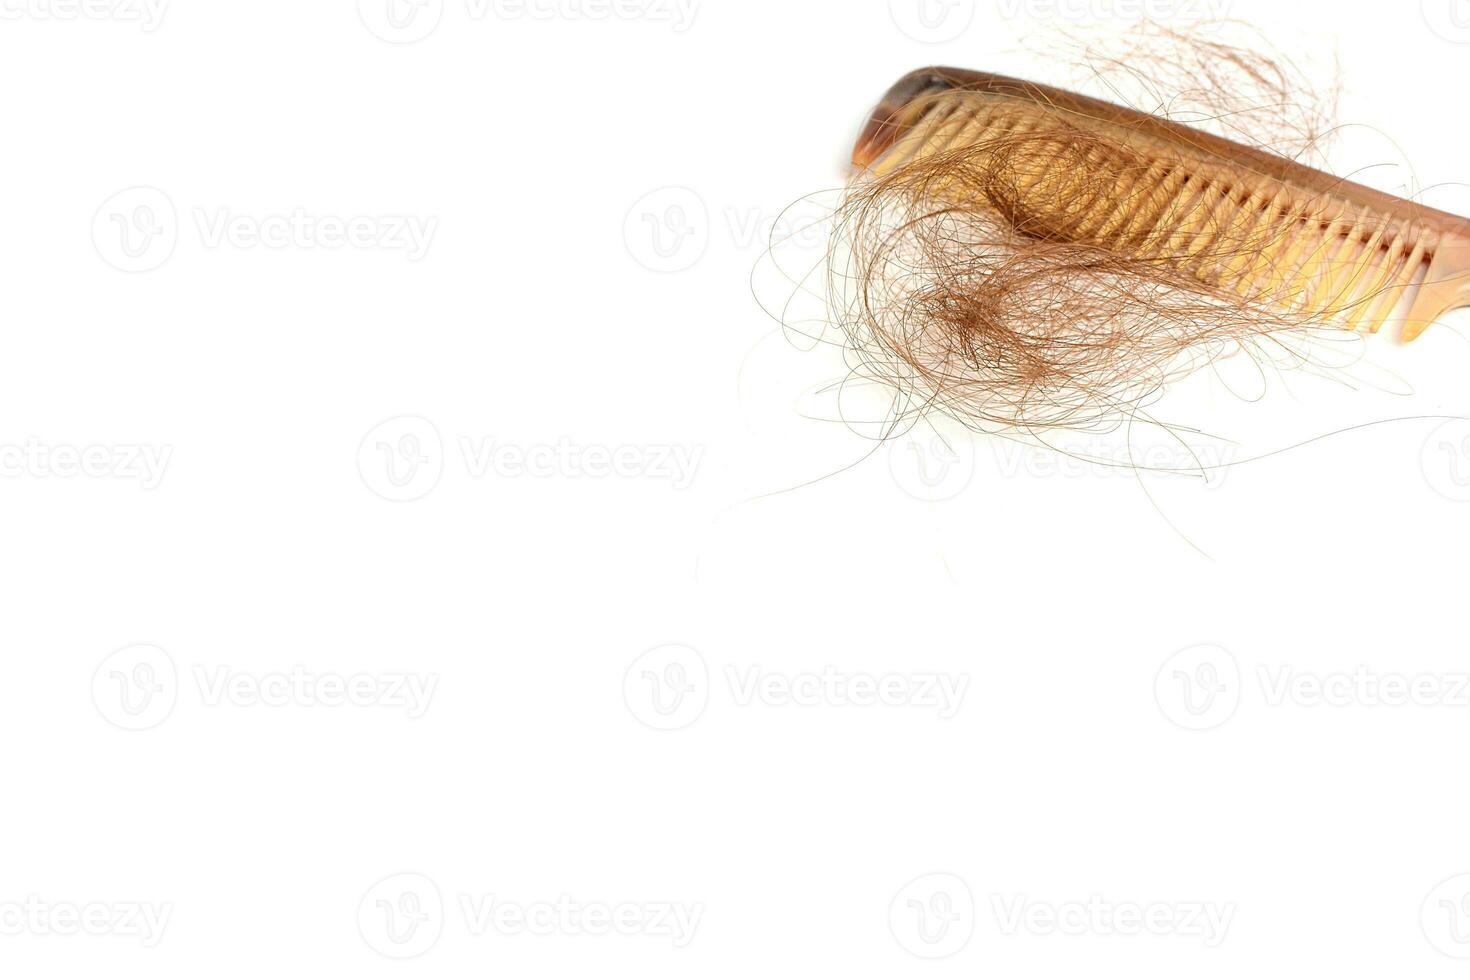 hår förlust i hårkam, hår falla varje dag allvarlig problem, på vit bakgrund. foto